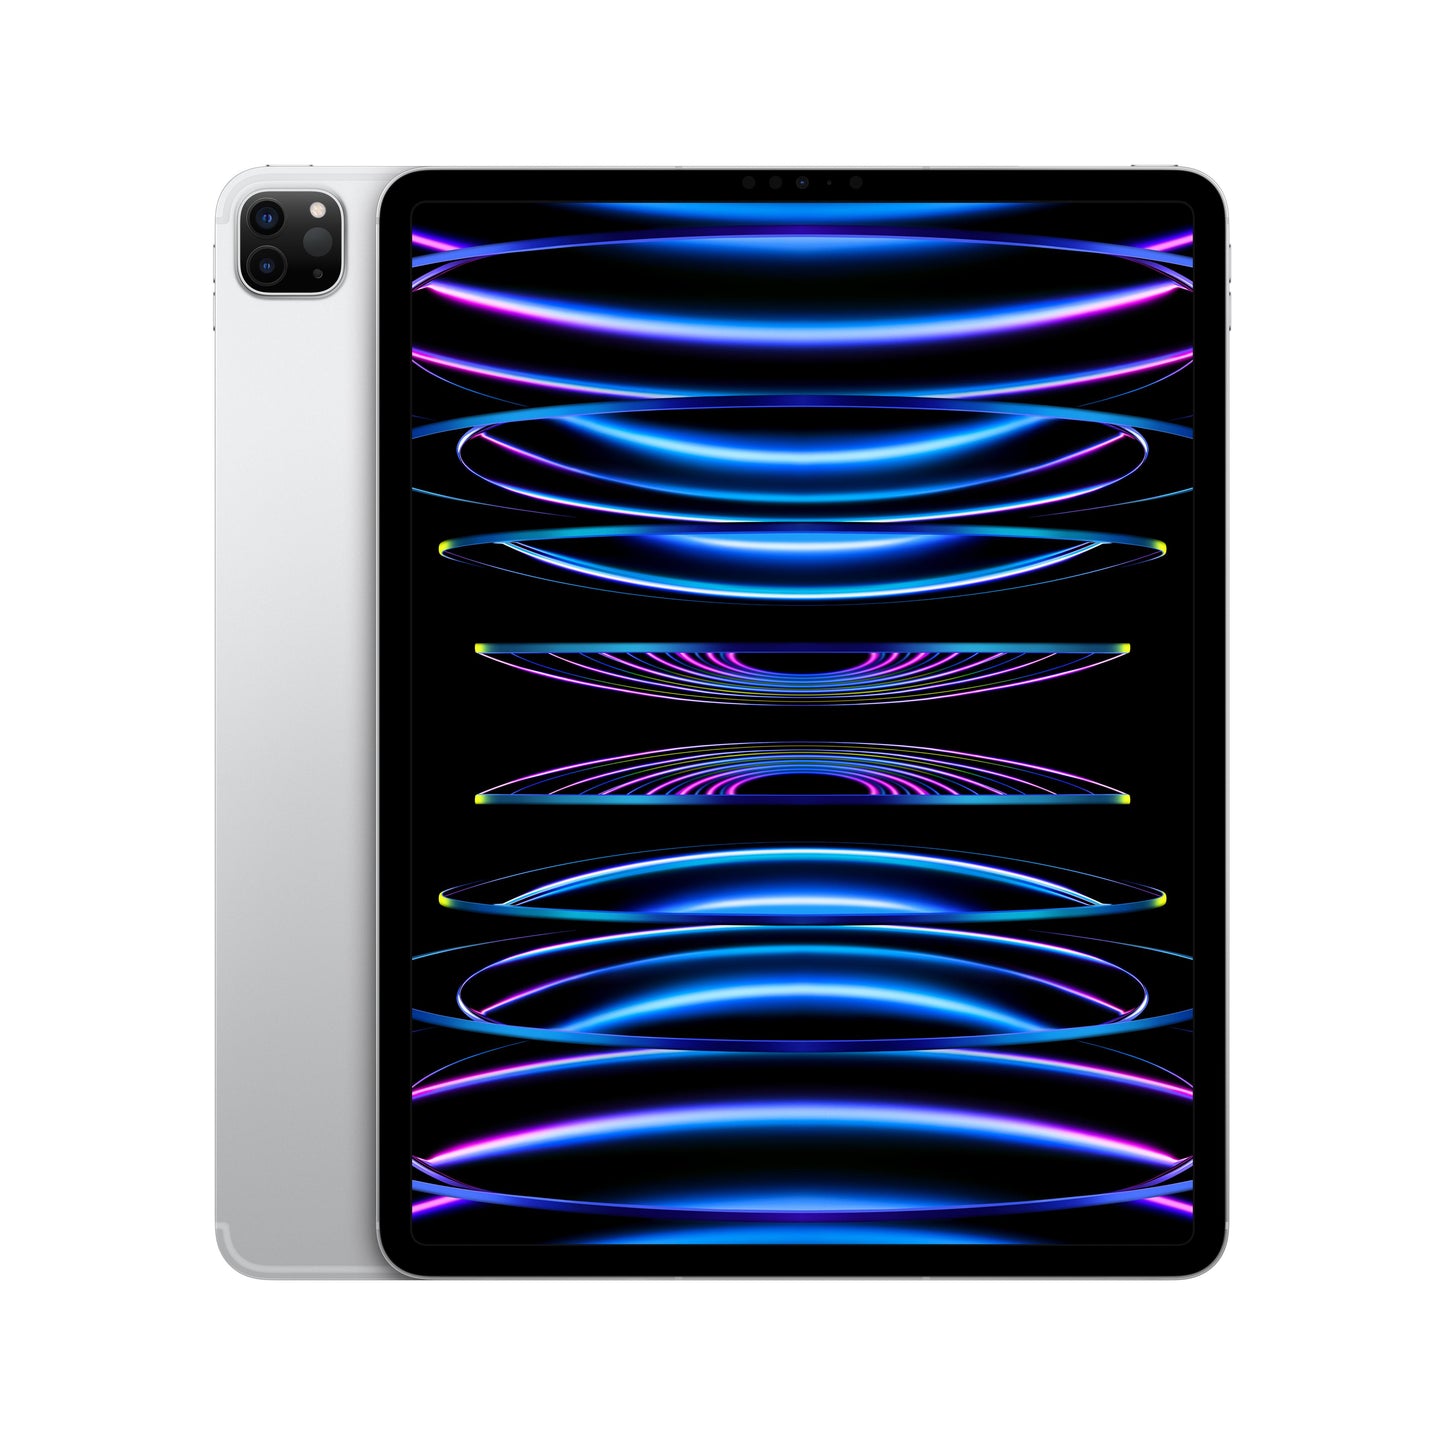 2022 12.9-inch iPad Pro Wi-Fi + Cellular 256GB - Silver (6th generation)